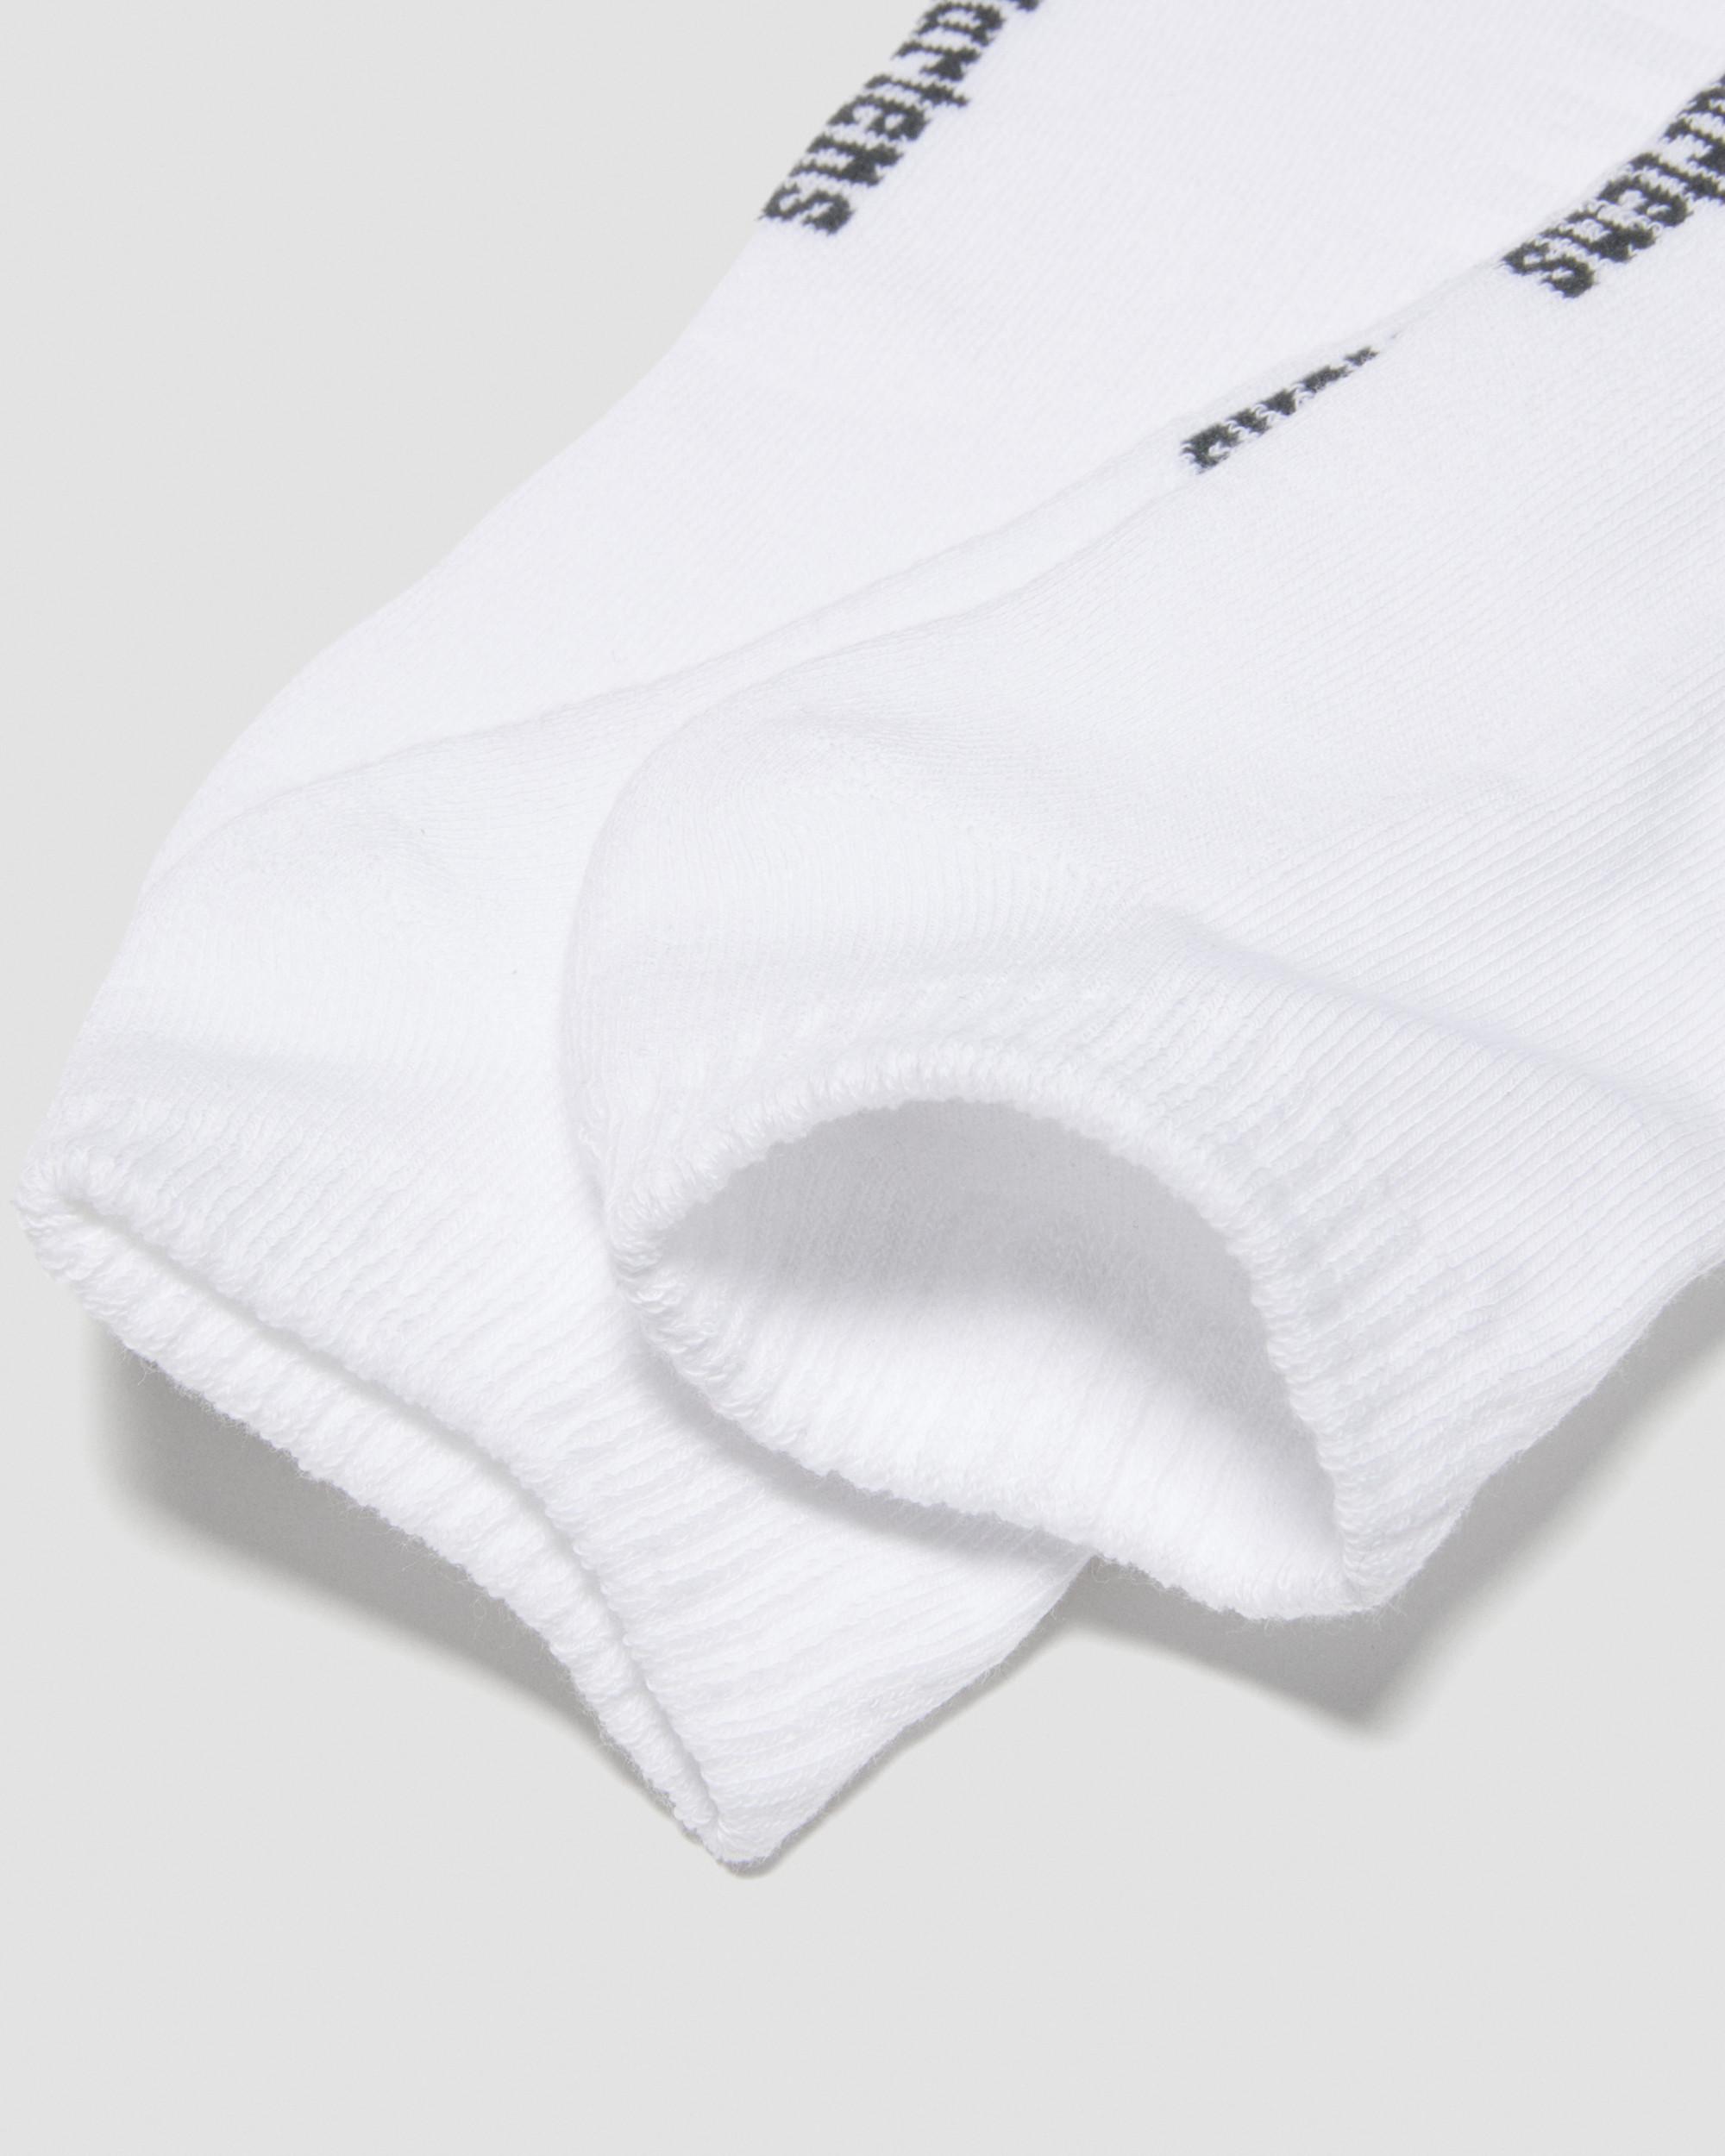 Double Doc Organic Cotton Blend Short 3-Pack Socks in White